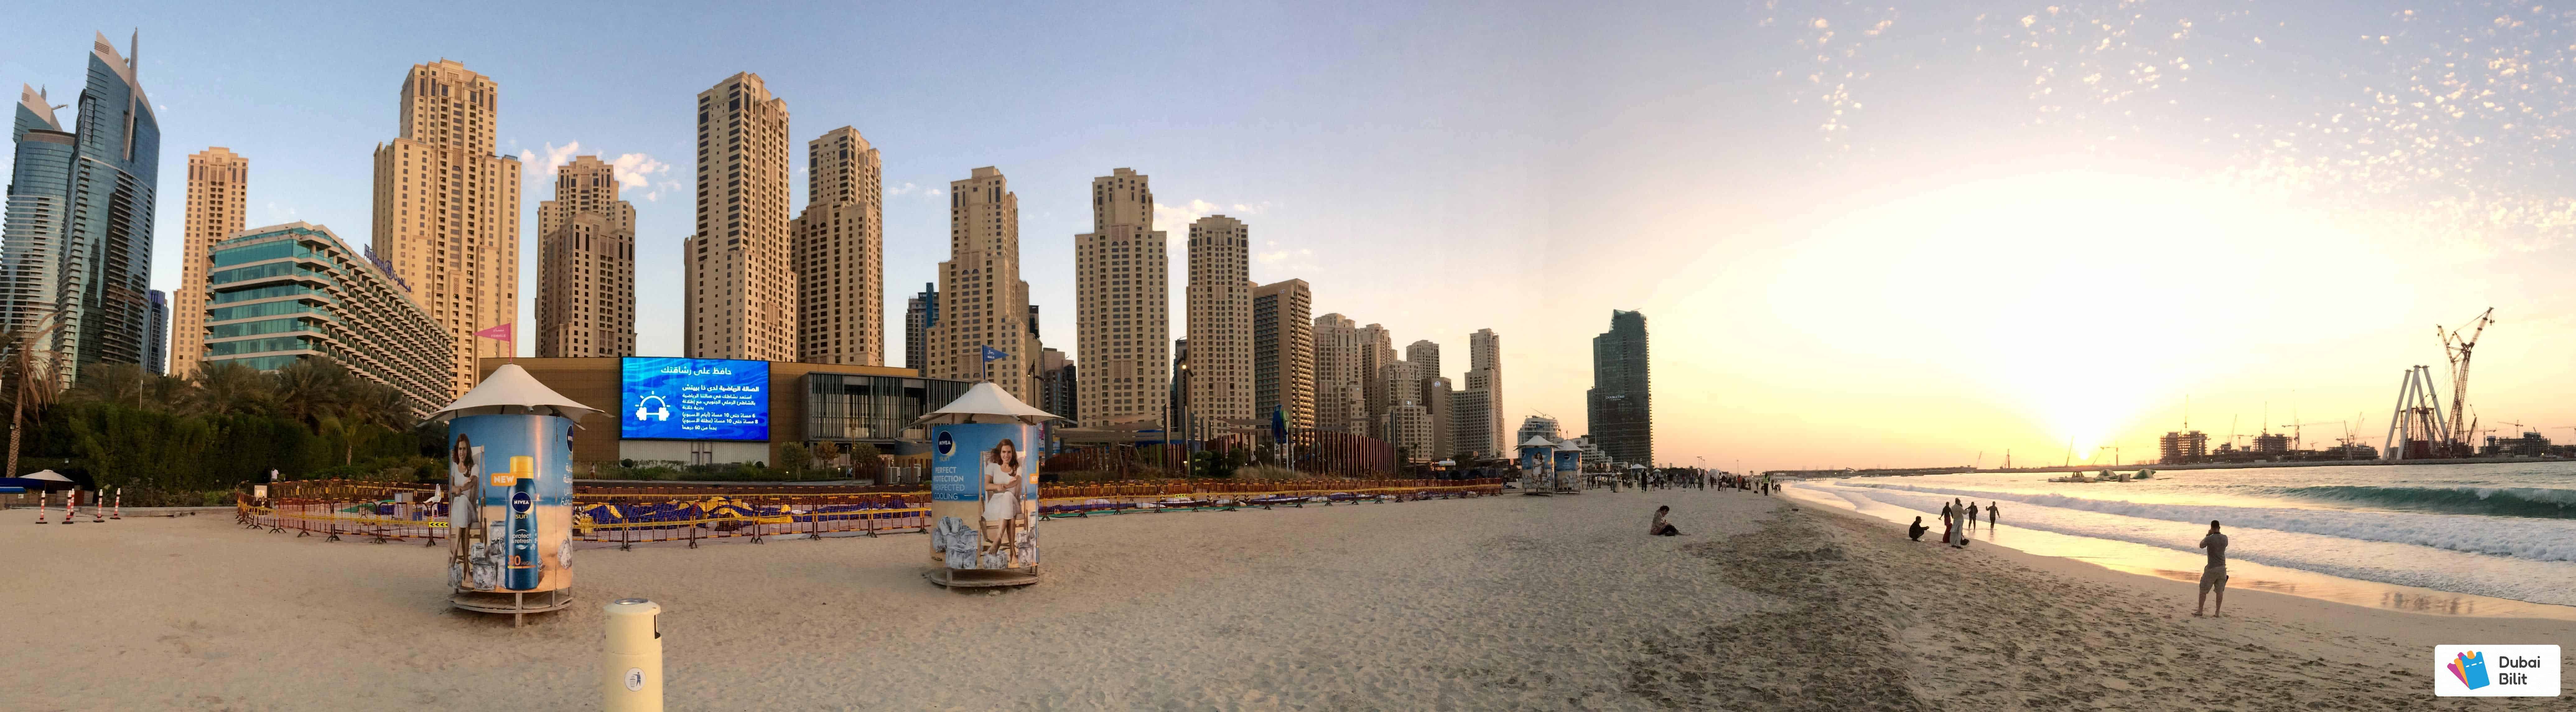 ساحل مارینا در دبی